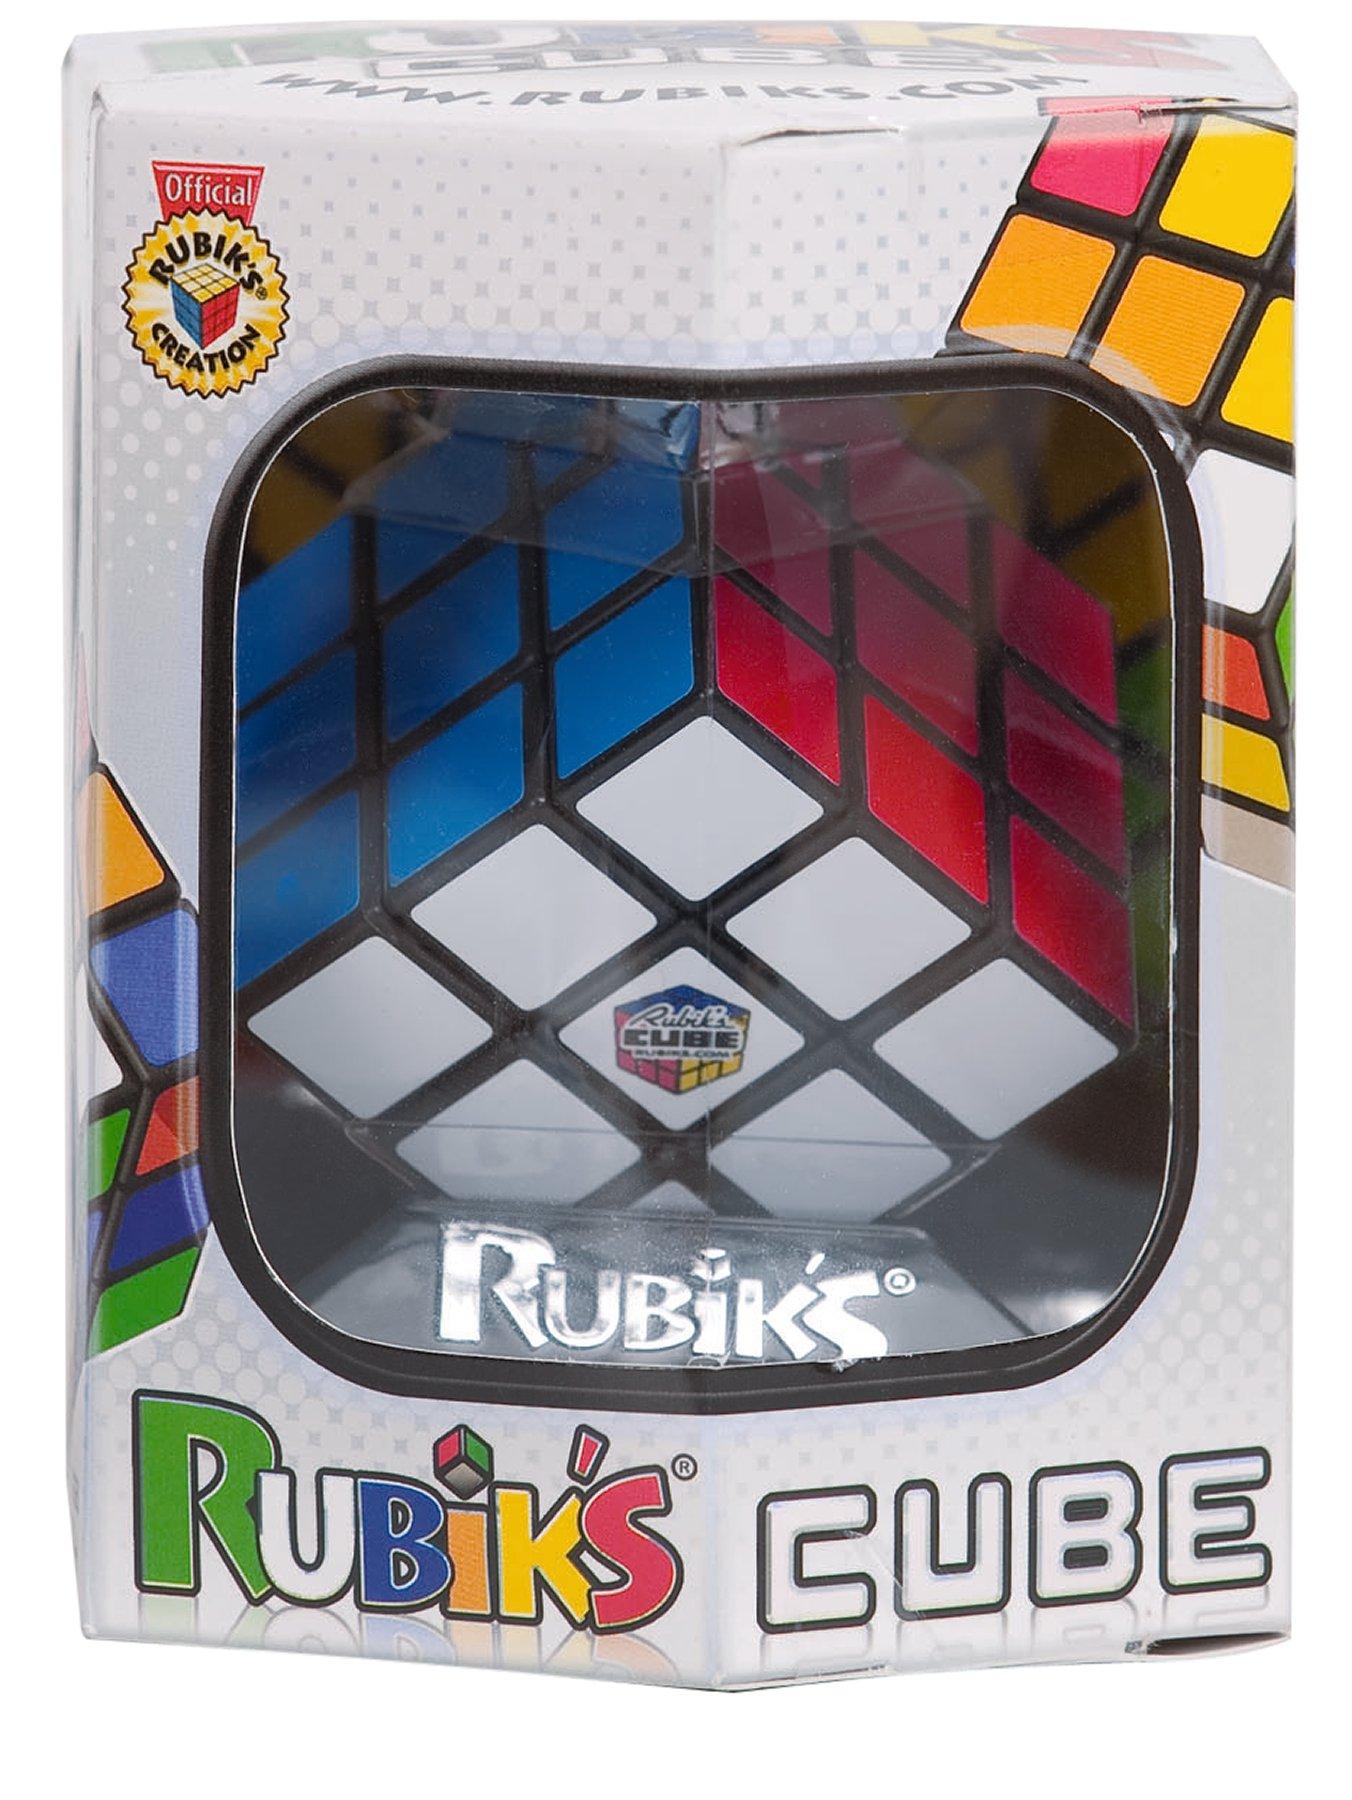 John Adams IDEAL, Rubik's 3x3 Cube: Twist, Turn, Learn